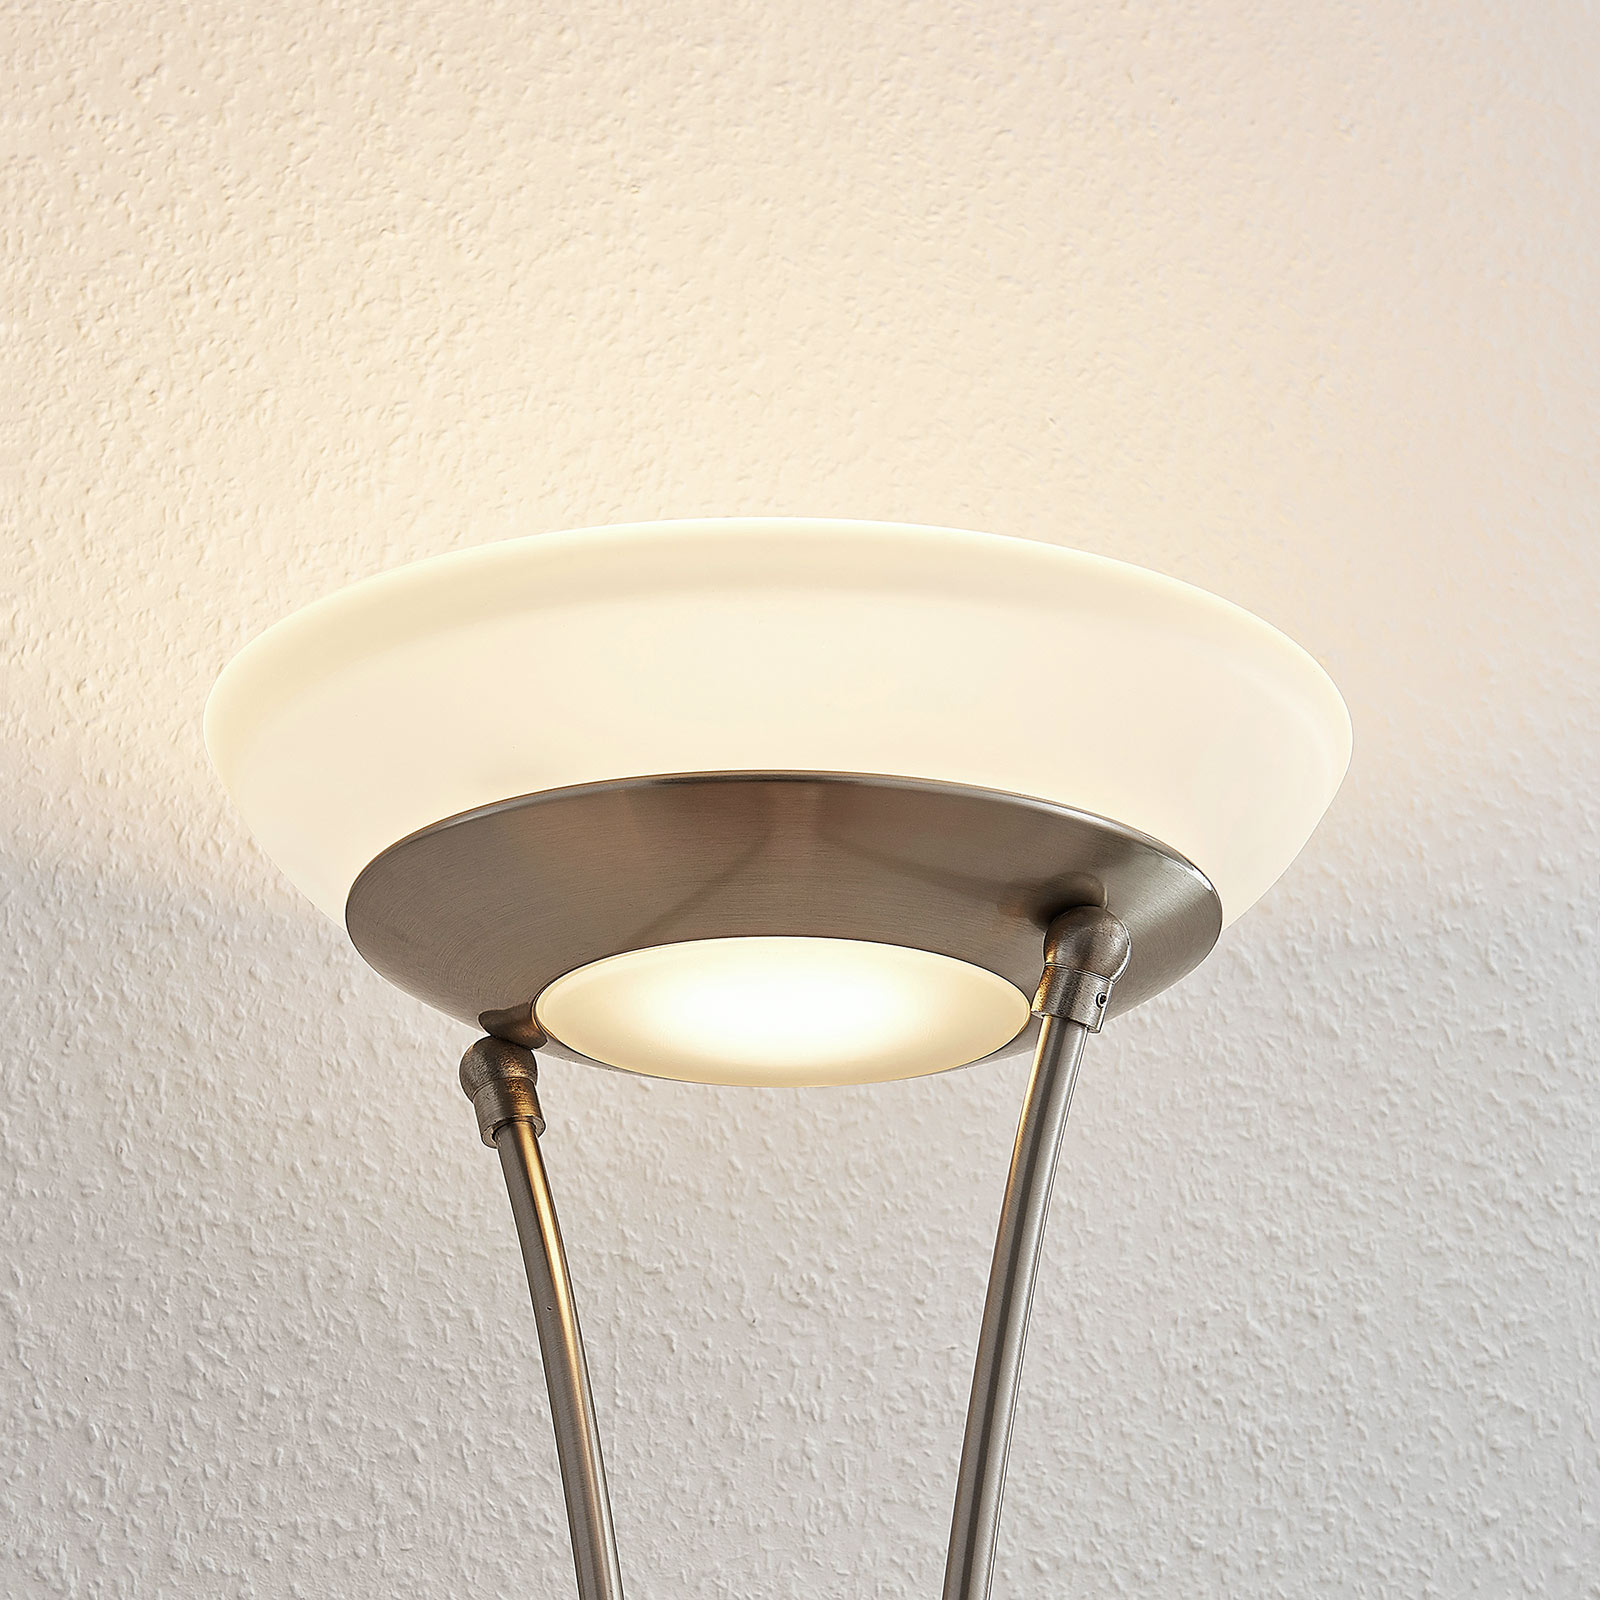 LED stojací lampa Amadou, čtecí světlo, nikl